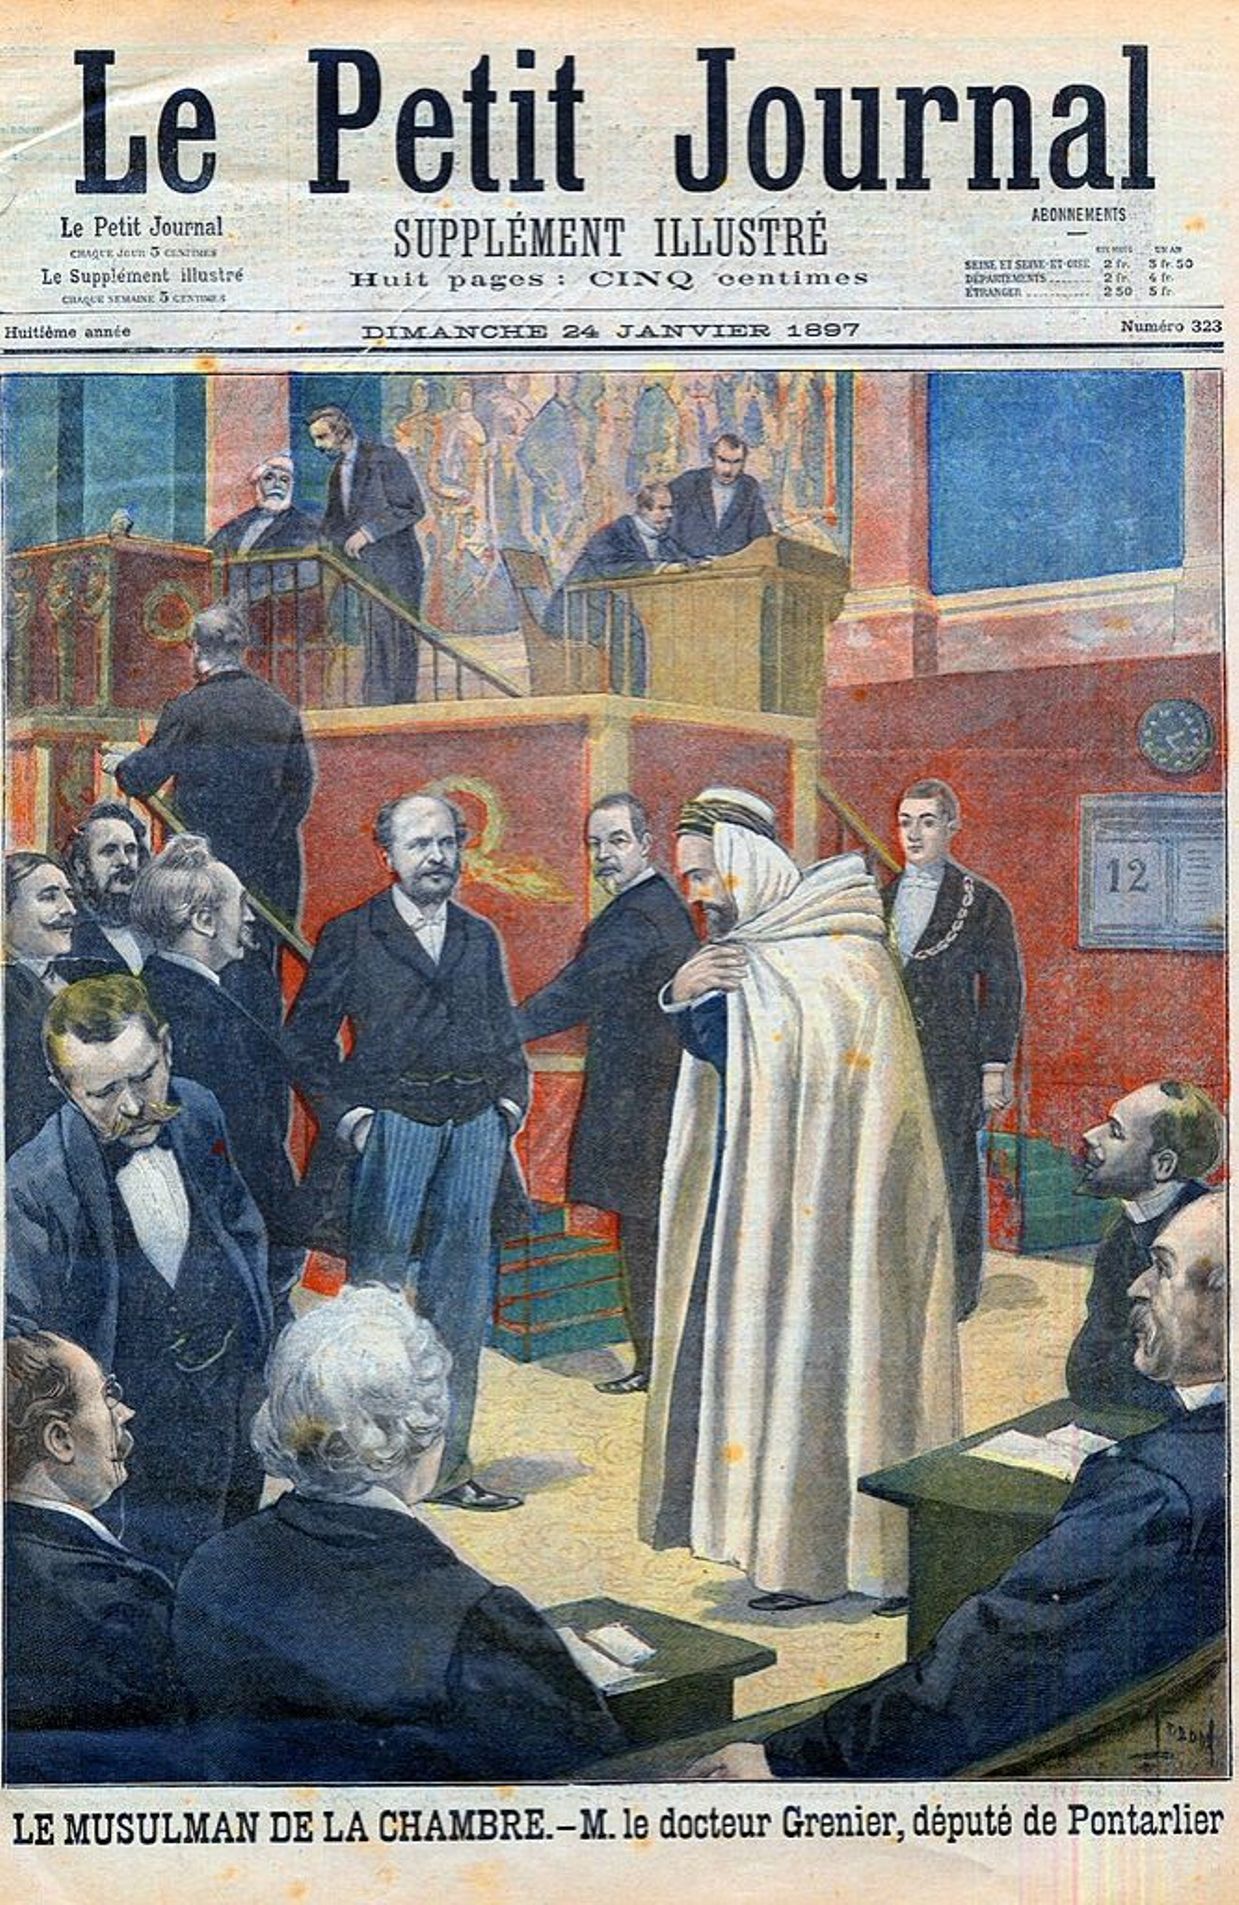 Le député de Pontarlier, immortalisé à l'Assemblée nationale dans "Le petit Journal" du 24 janvier 1897.